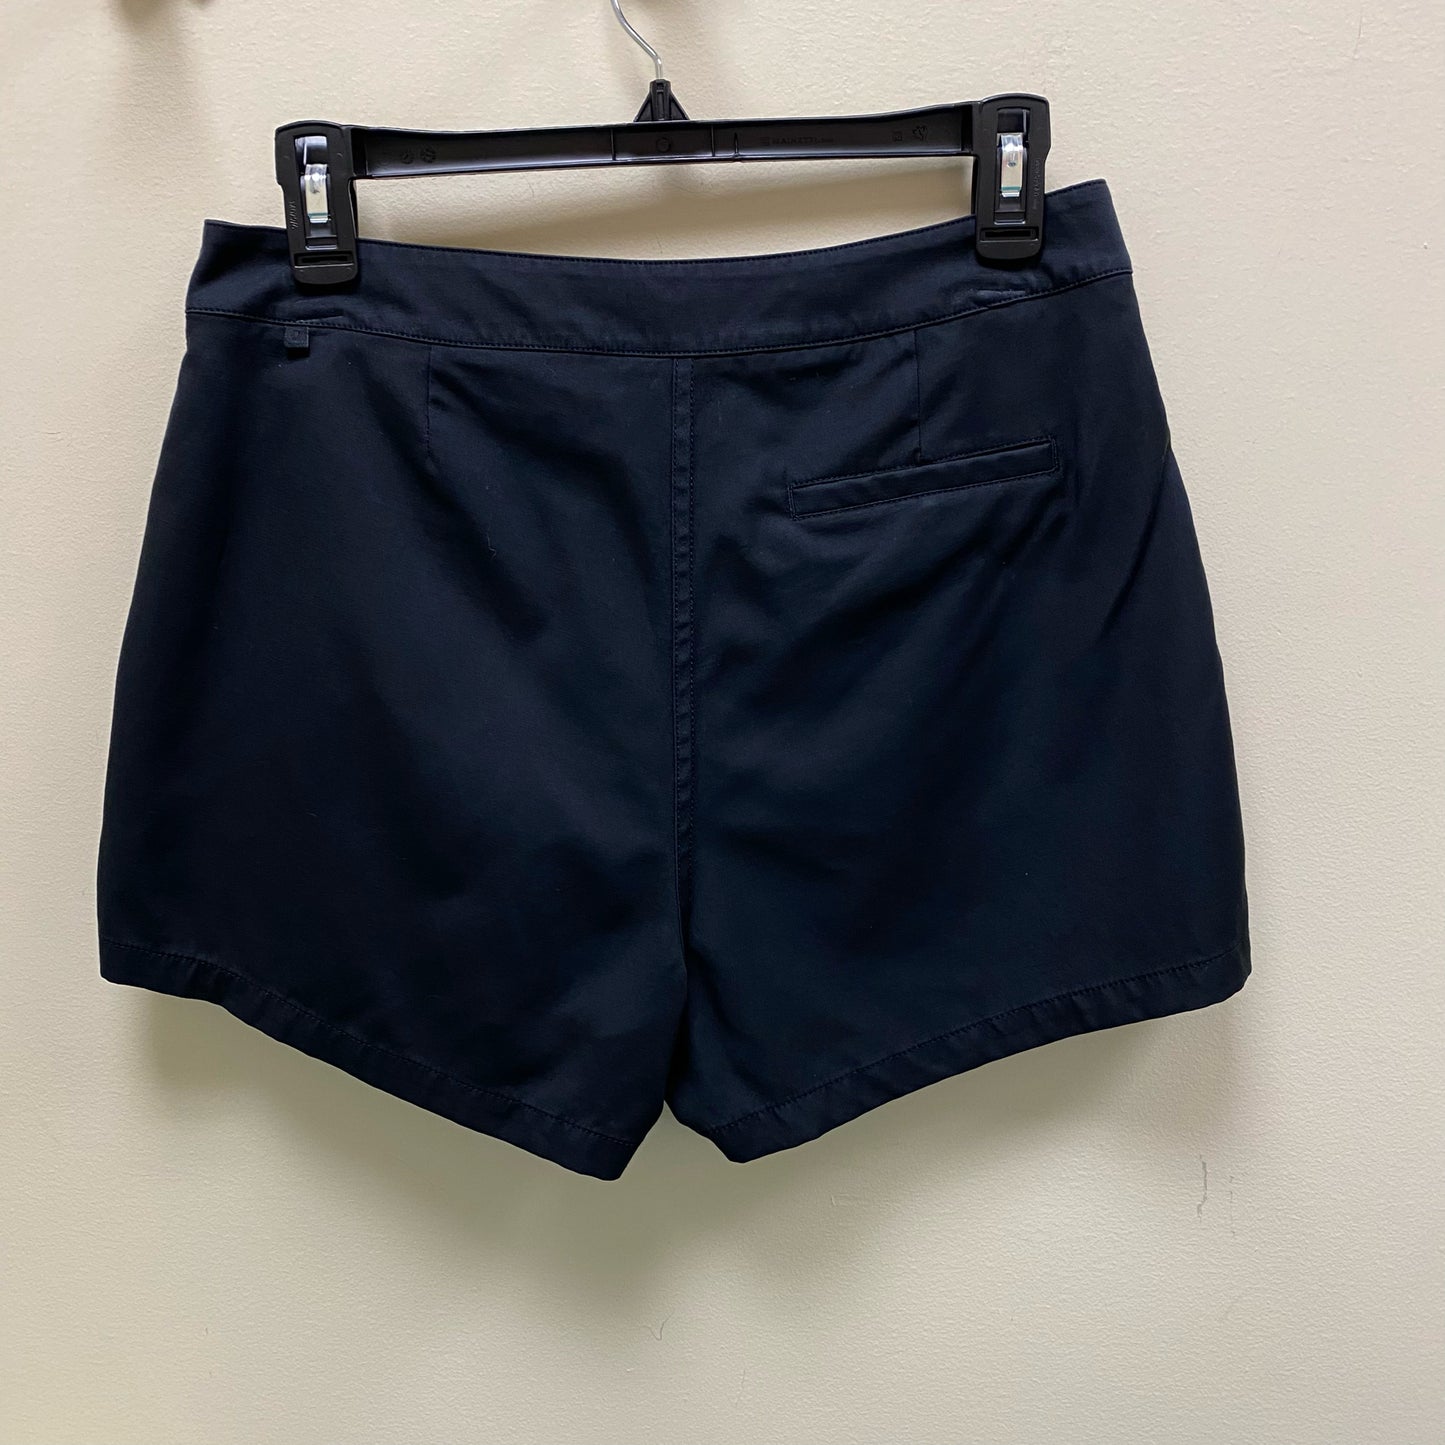 Lululemon "The Instant Short" Shorts - Size 8